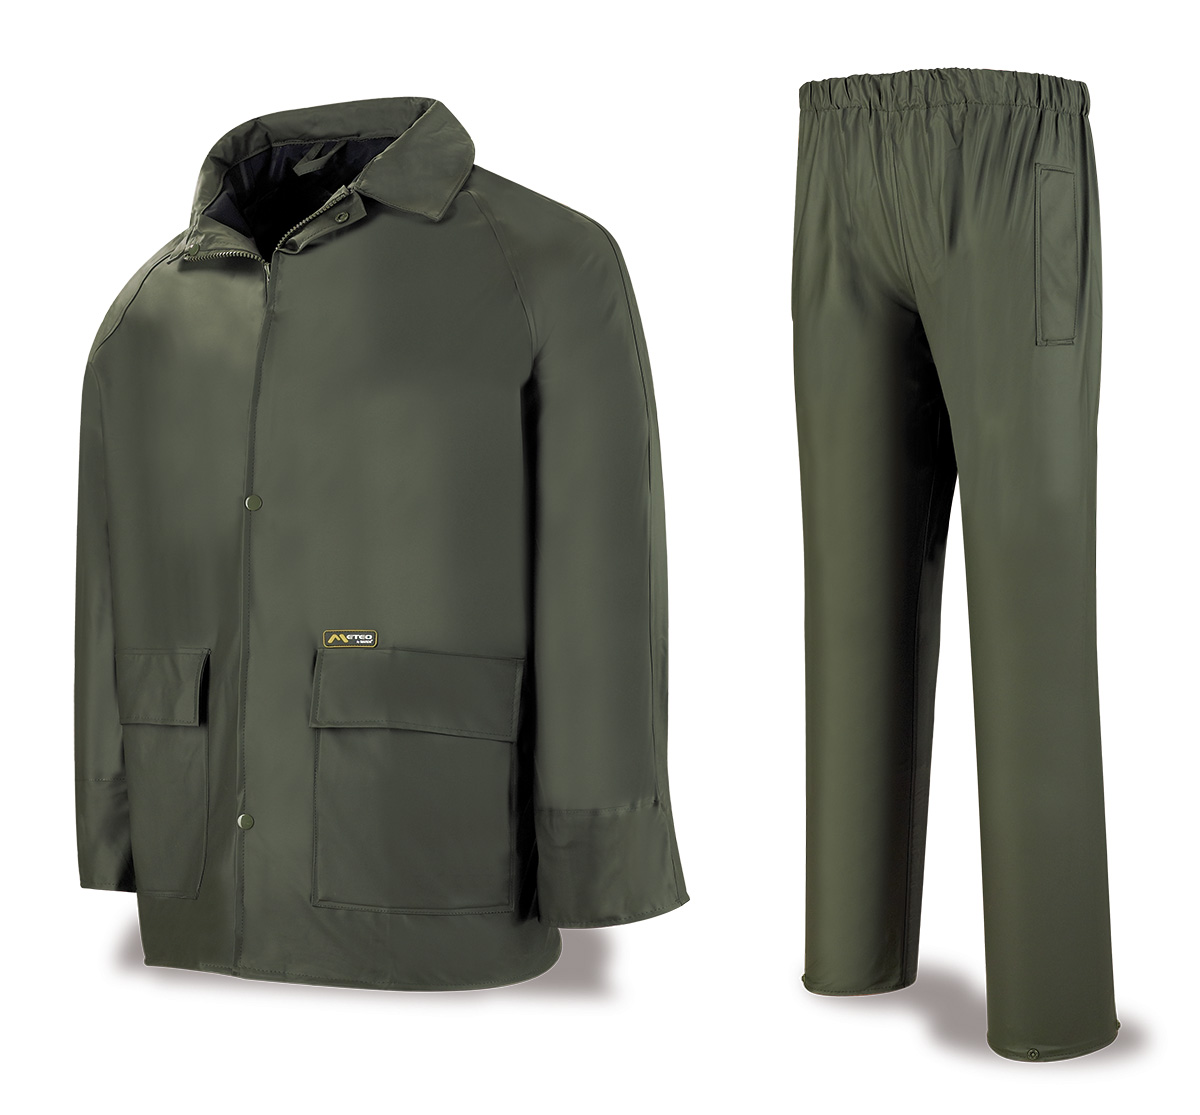 188-TAPV Coats and Rain Gear Rain Gear Rain suit. 100% POLYURETANE